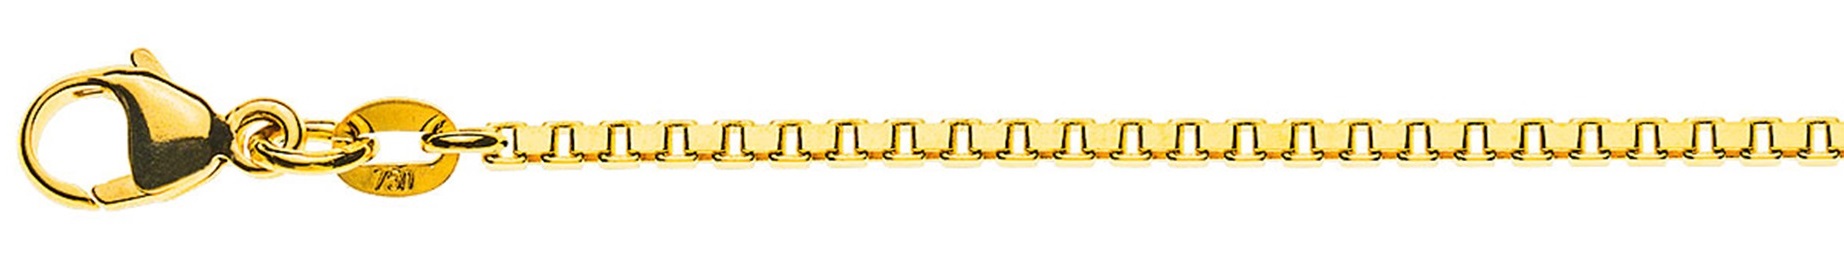 AURONOS Prestige Halskette Gelbgold 18K Venezianerkette diamantiert 42cm 1.6mm